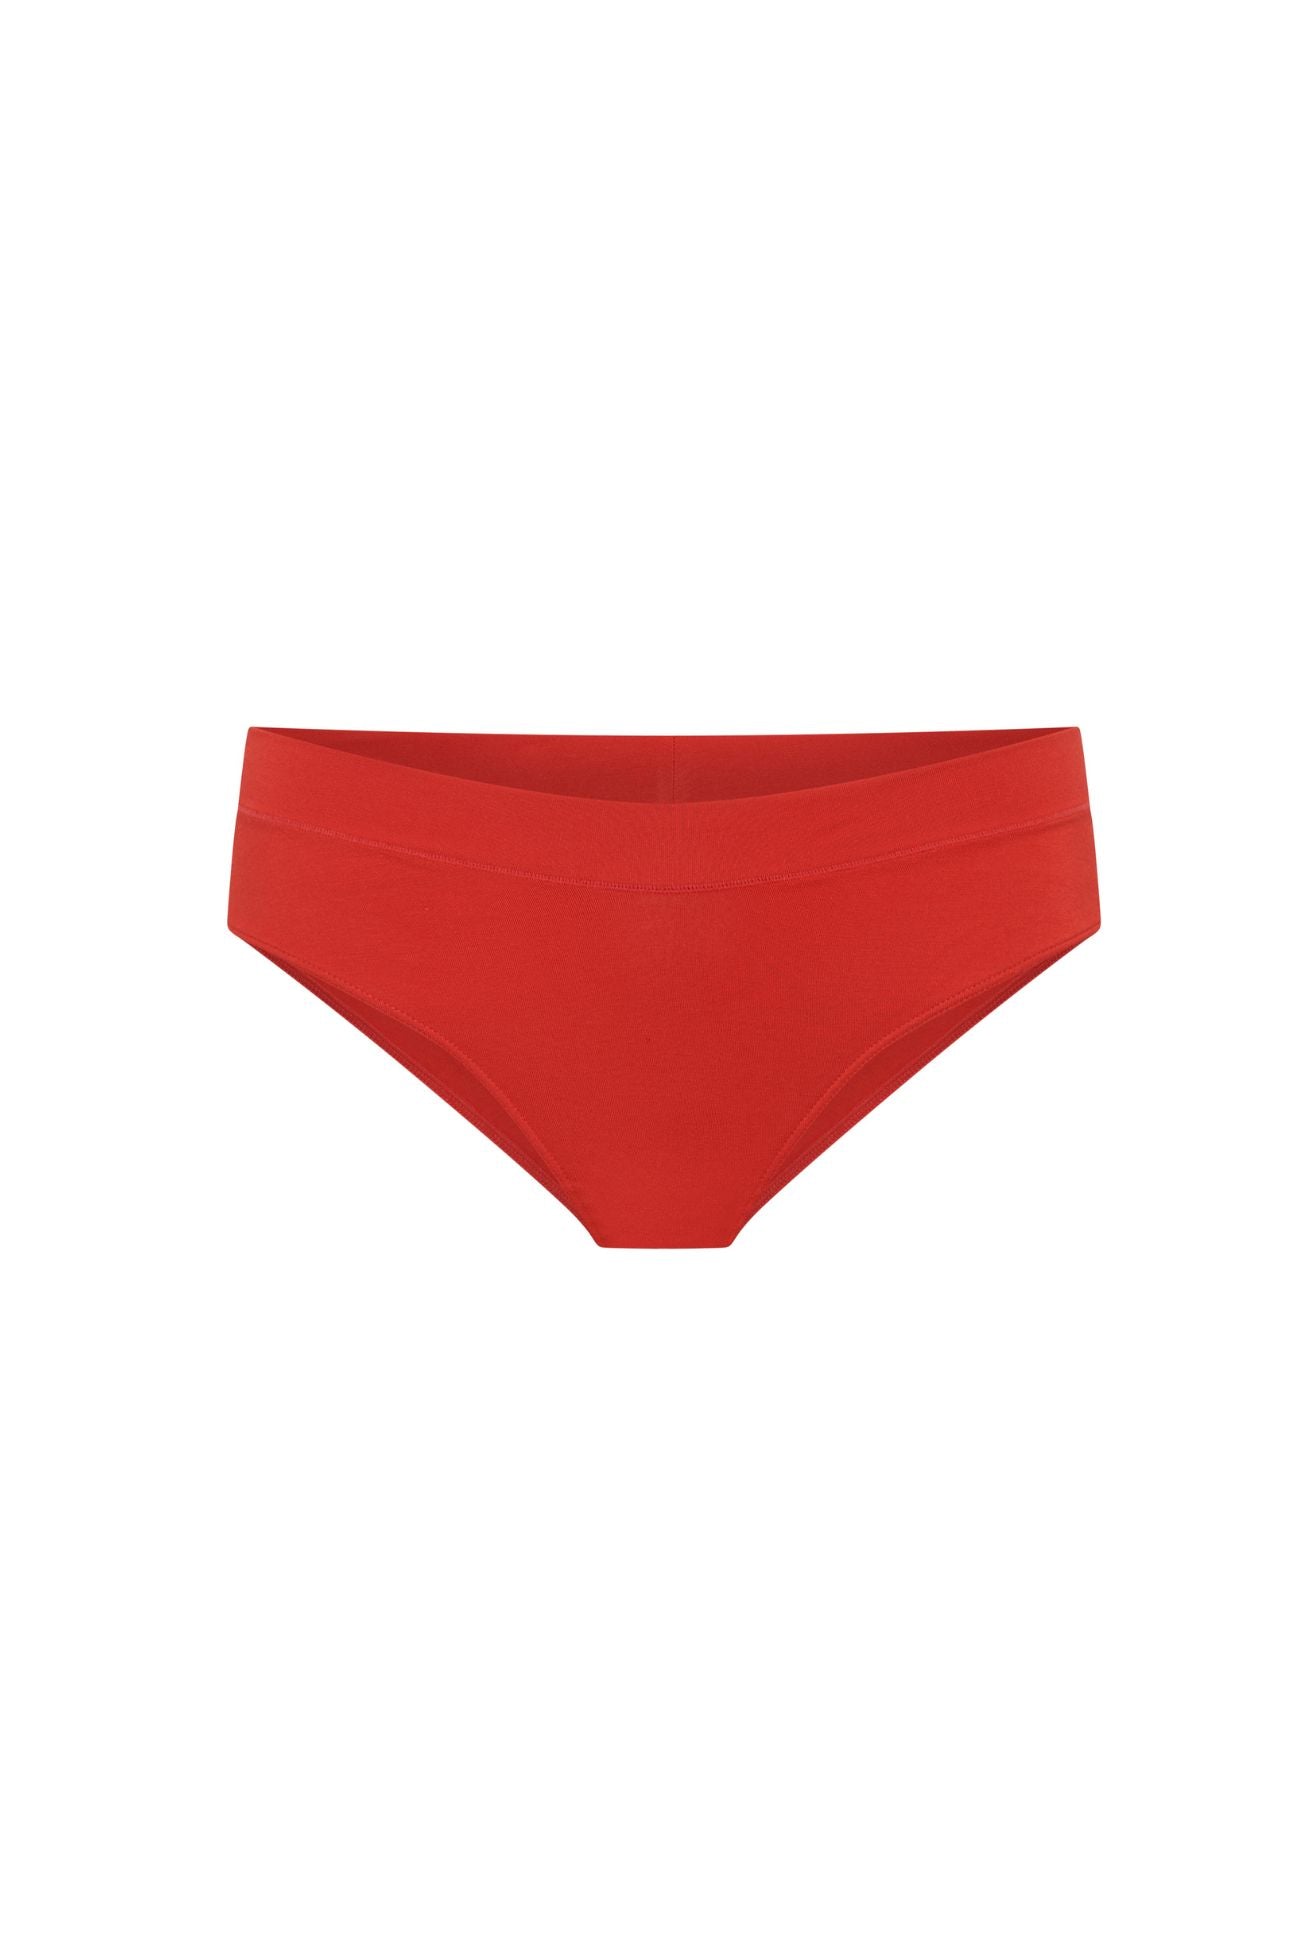 The Bikini - Cherry Limited Edition, Undies - First Thing Underwear